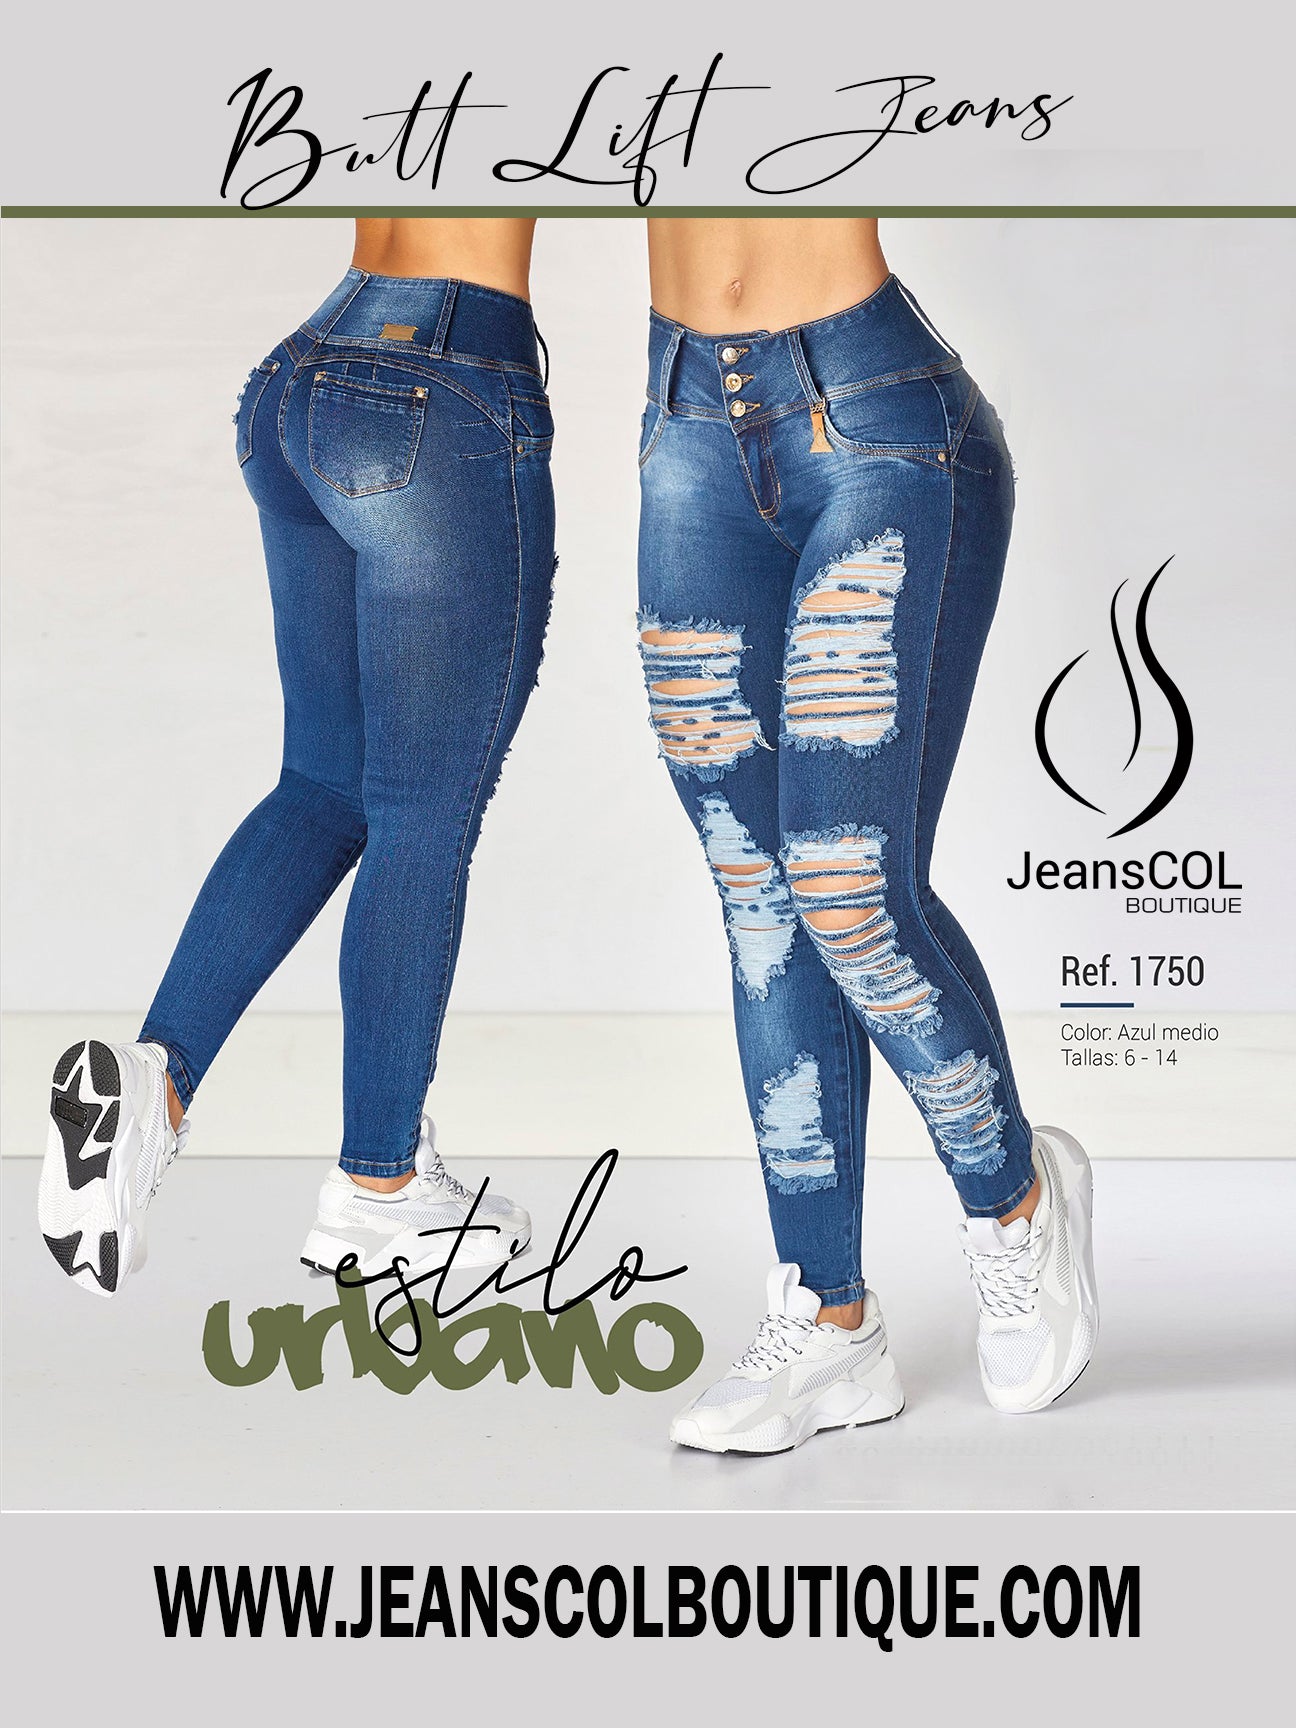 JeansCol Boutique - 😄Con nuestras fajas 💯% Colombianas ☑Moldea